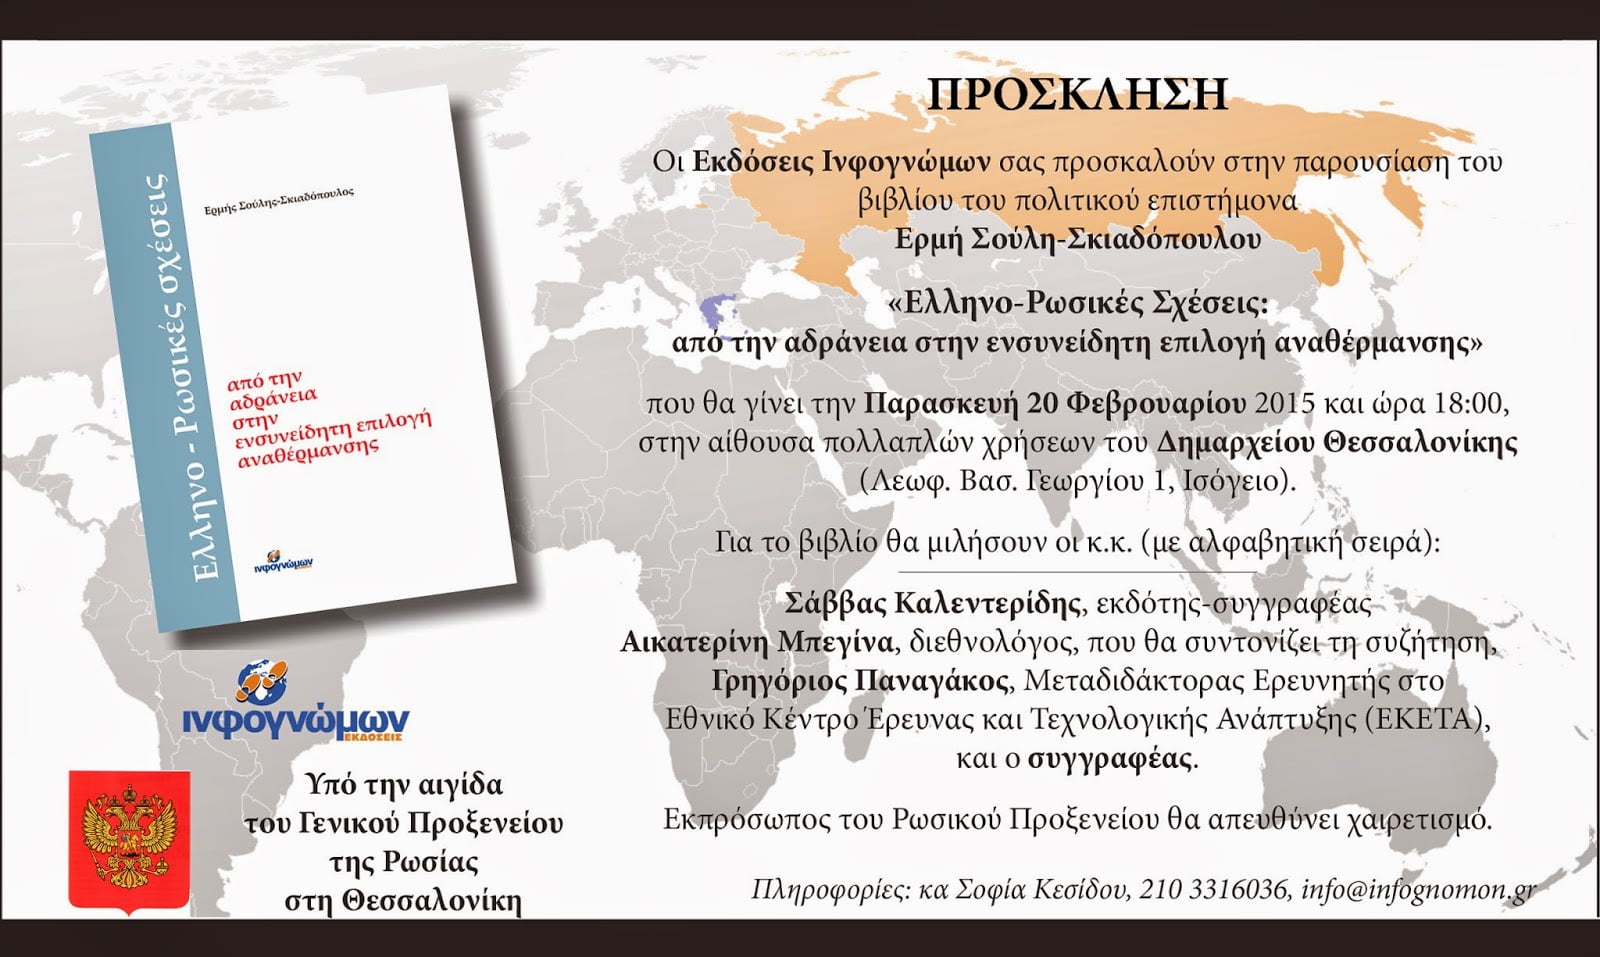 Παρουσίαση του βιβλίου “Ελληνο-Ρωσικές Σχέσεις: Από την Αδράνεια στην Ενσυνείδητη Επιλογή Αναθέρμανσης